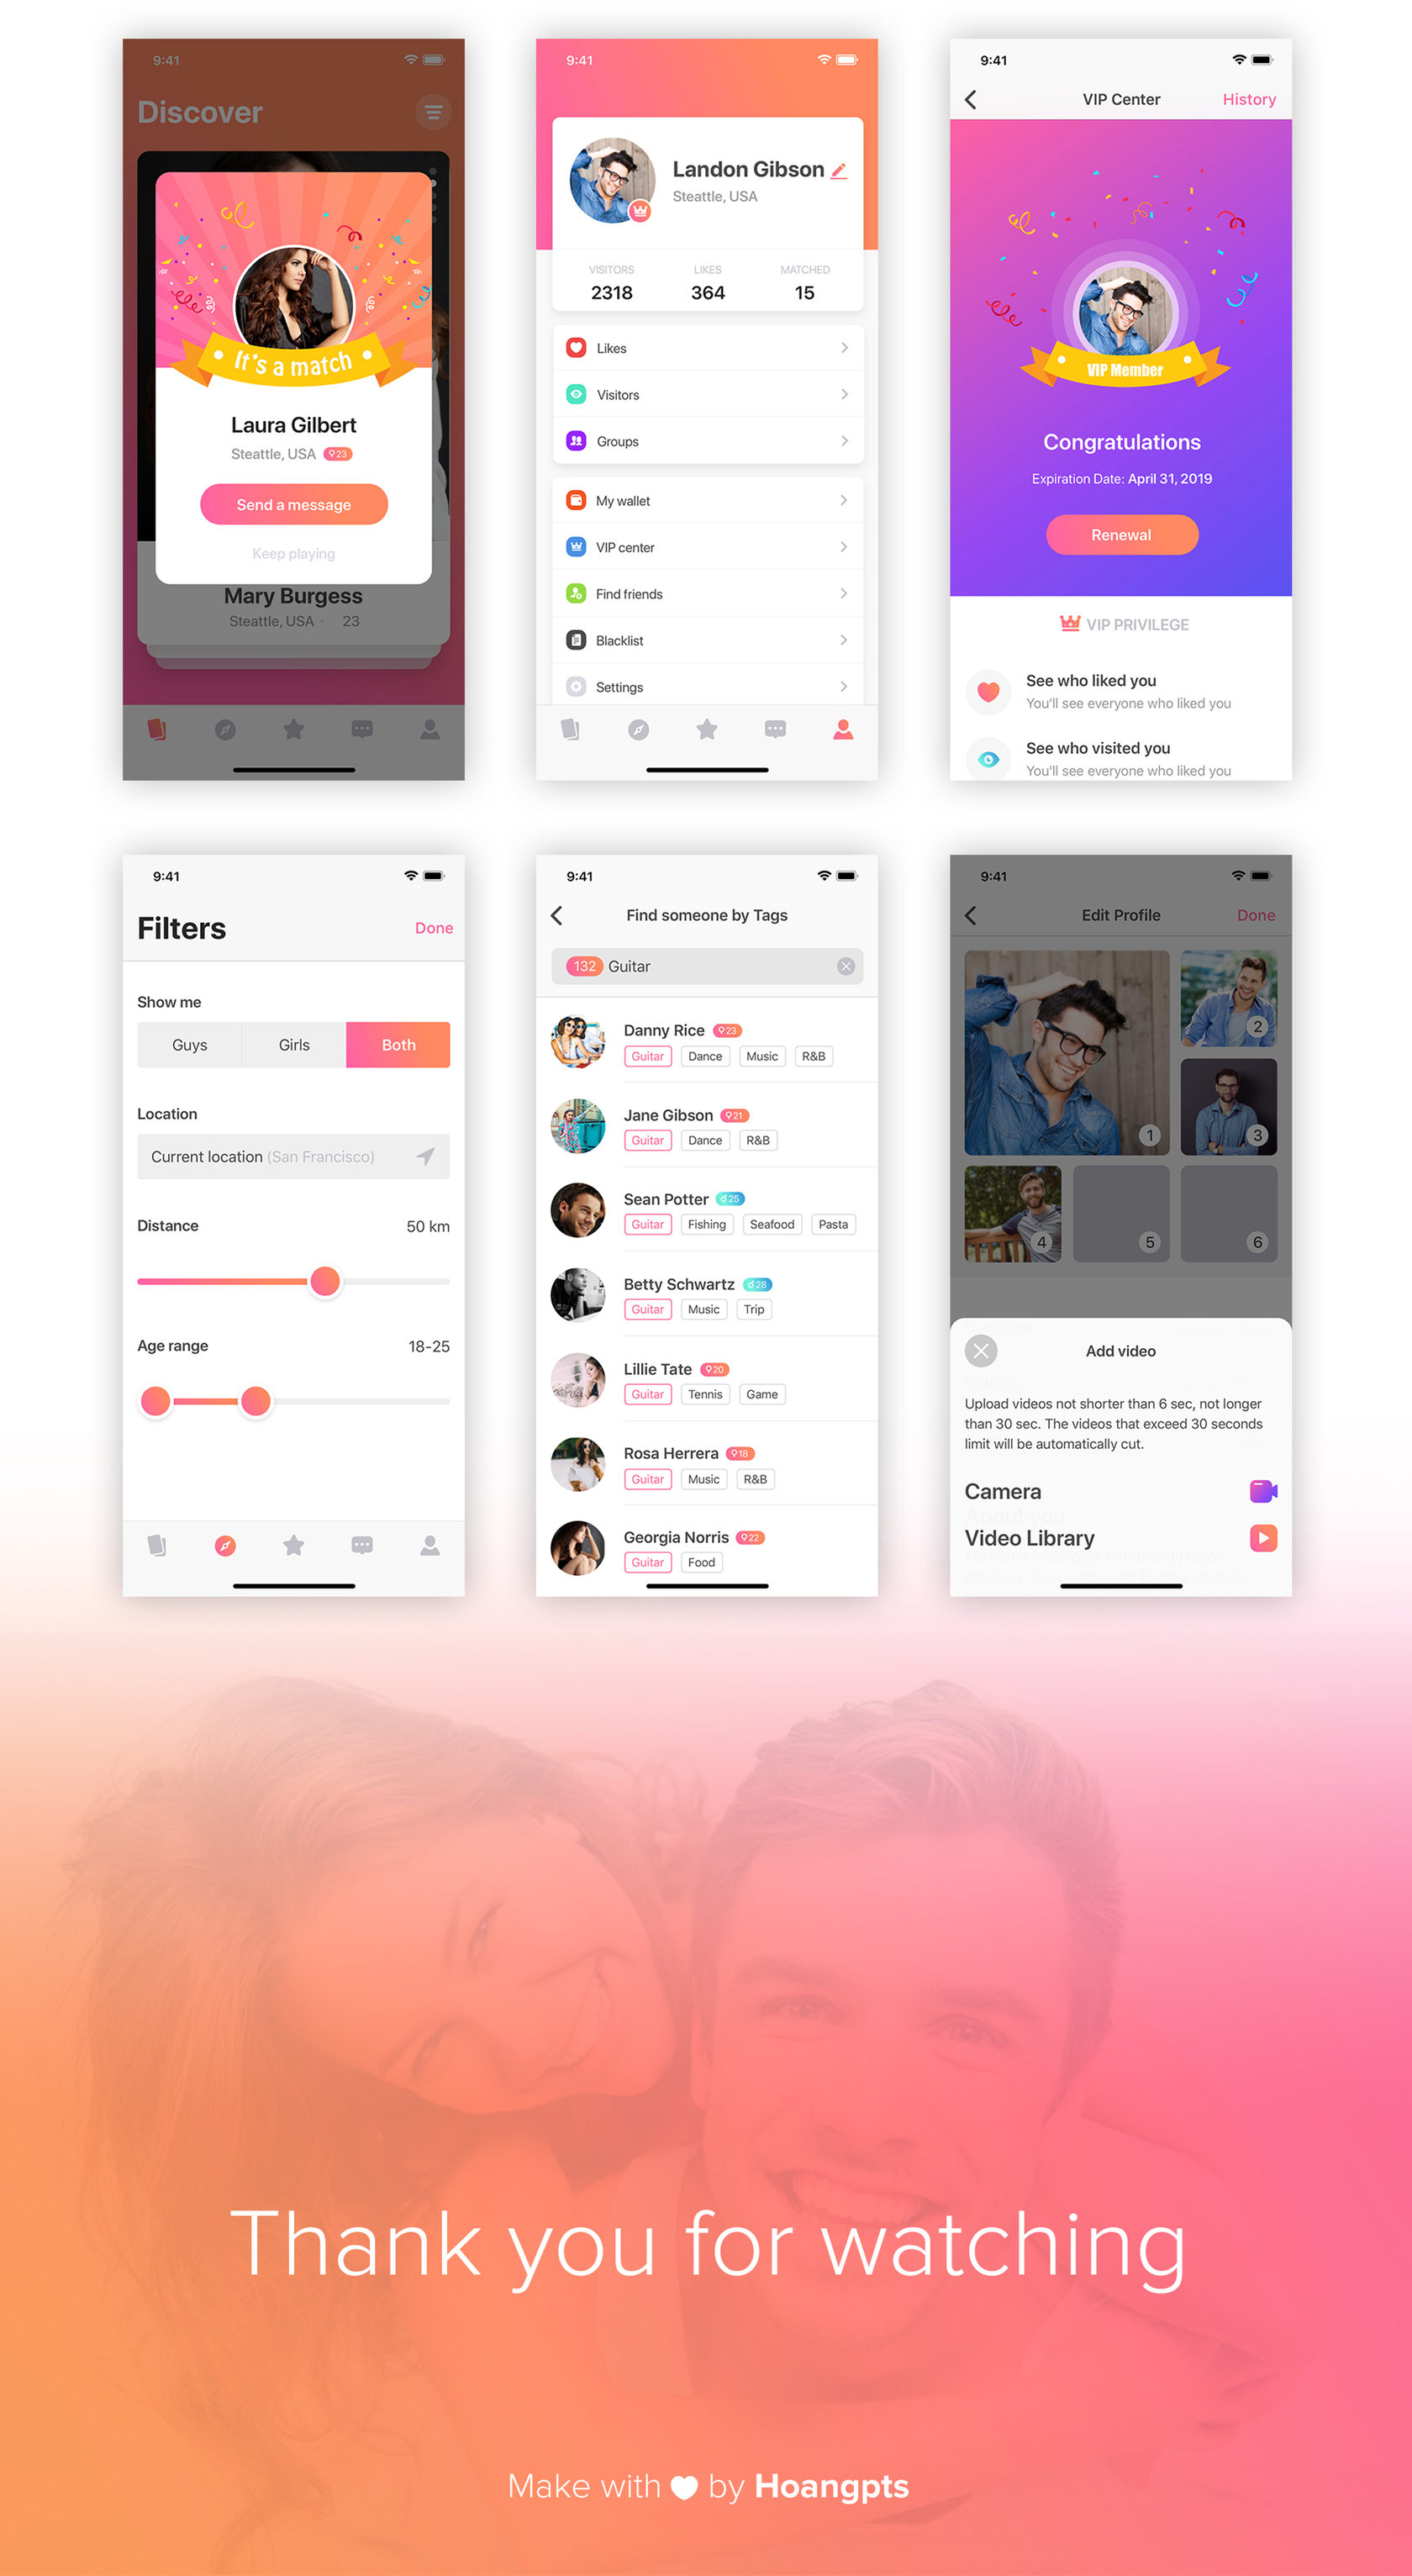 MIGO - dating app template